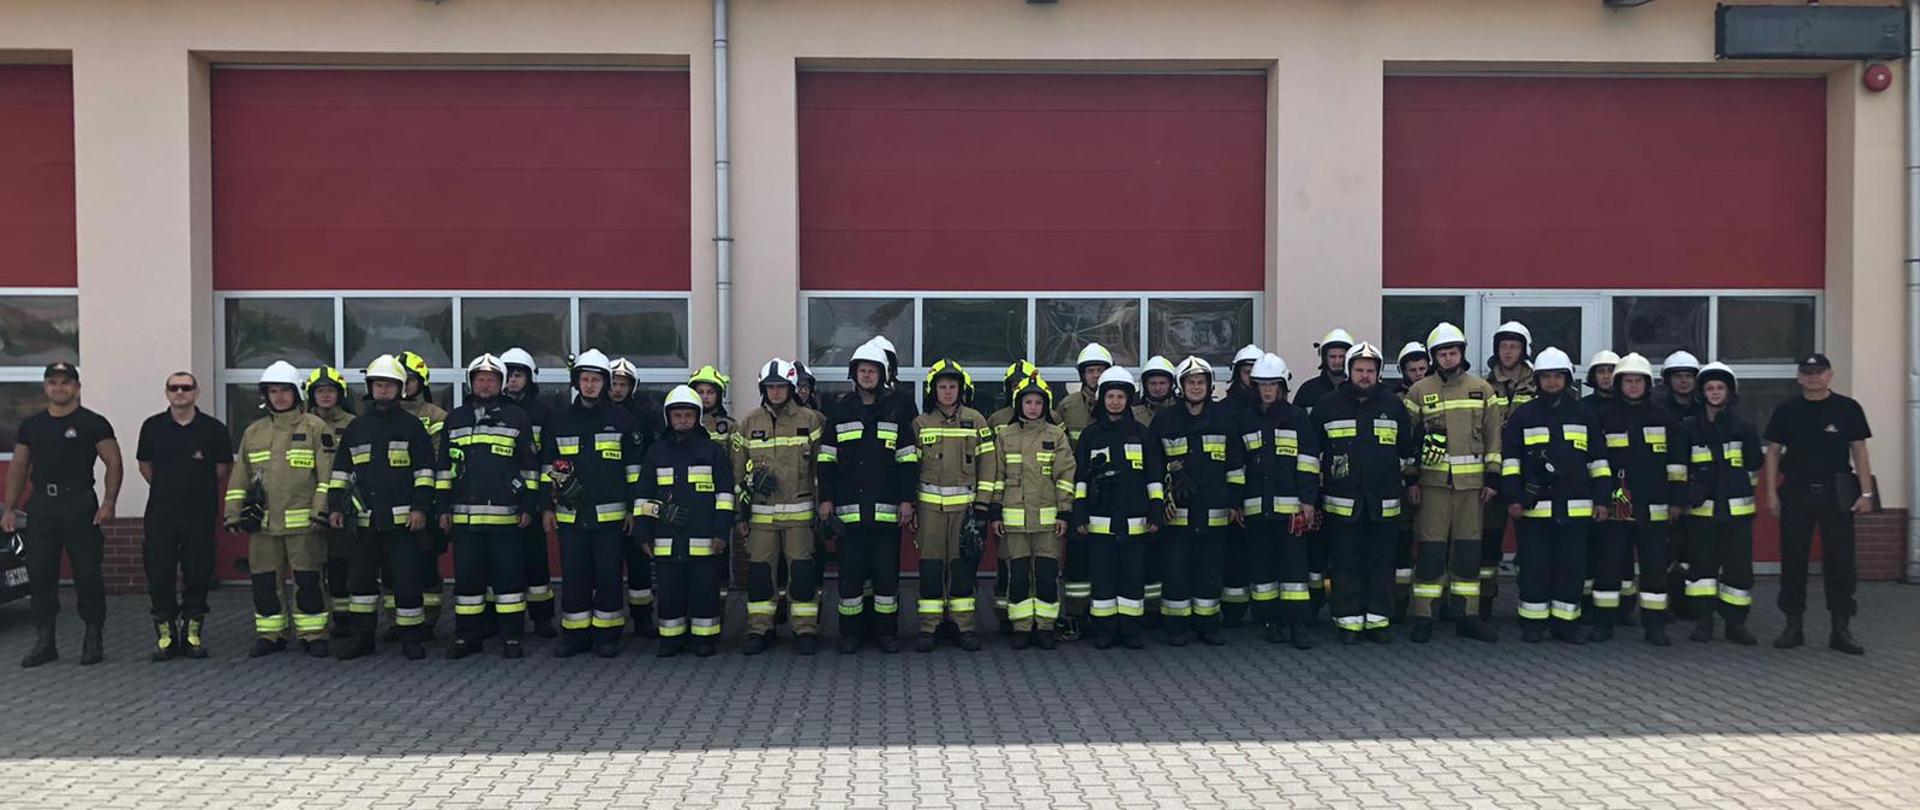 Zdjęcie przedstawia grupę absolwentów podczas egzaminu praktycznego w KP PSP Międzyrzecz kończącego szkolenie podstawowe strażaka ratownika OSP